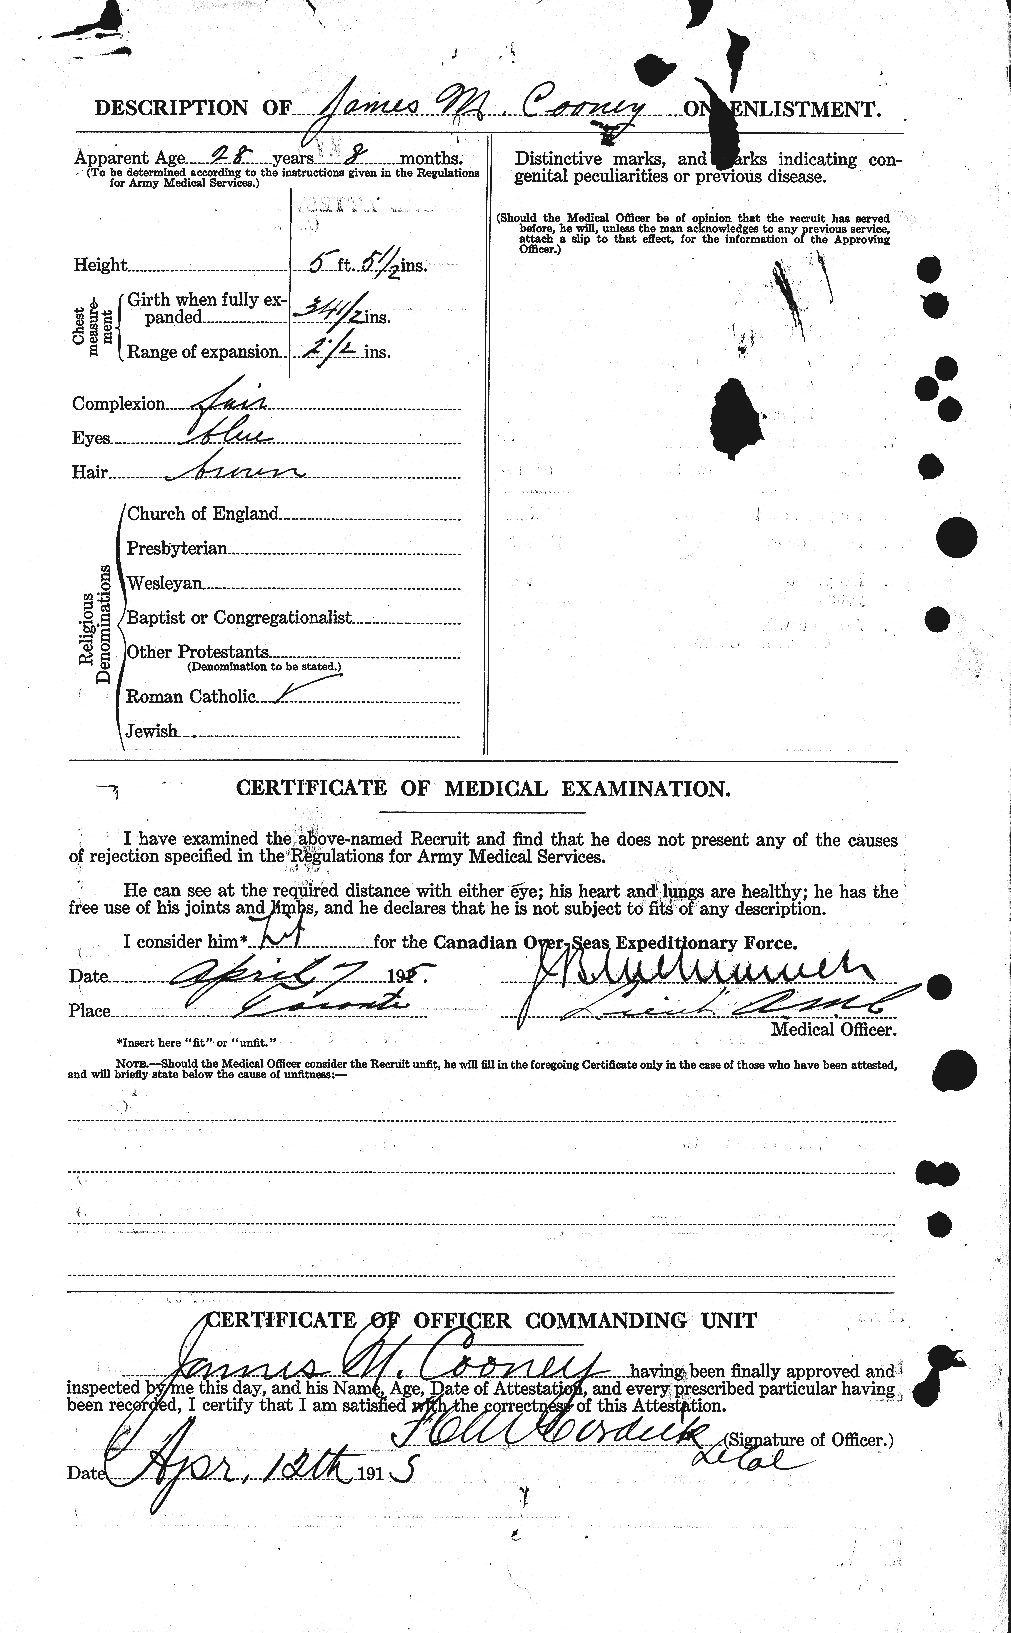 Dossiers du Personnel de la Première Guerre mondiale - CEC 055210b